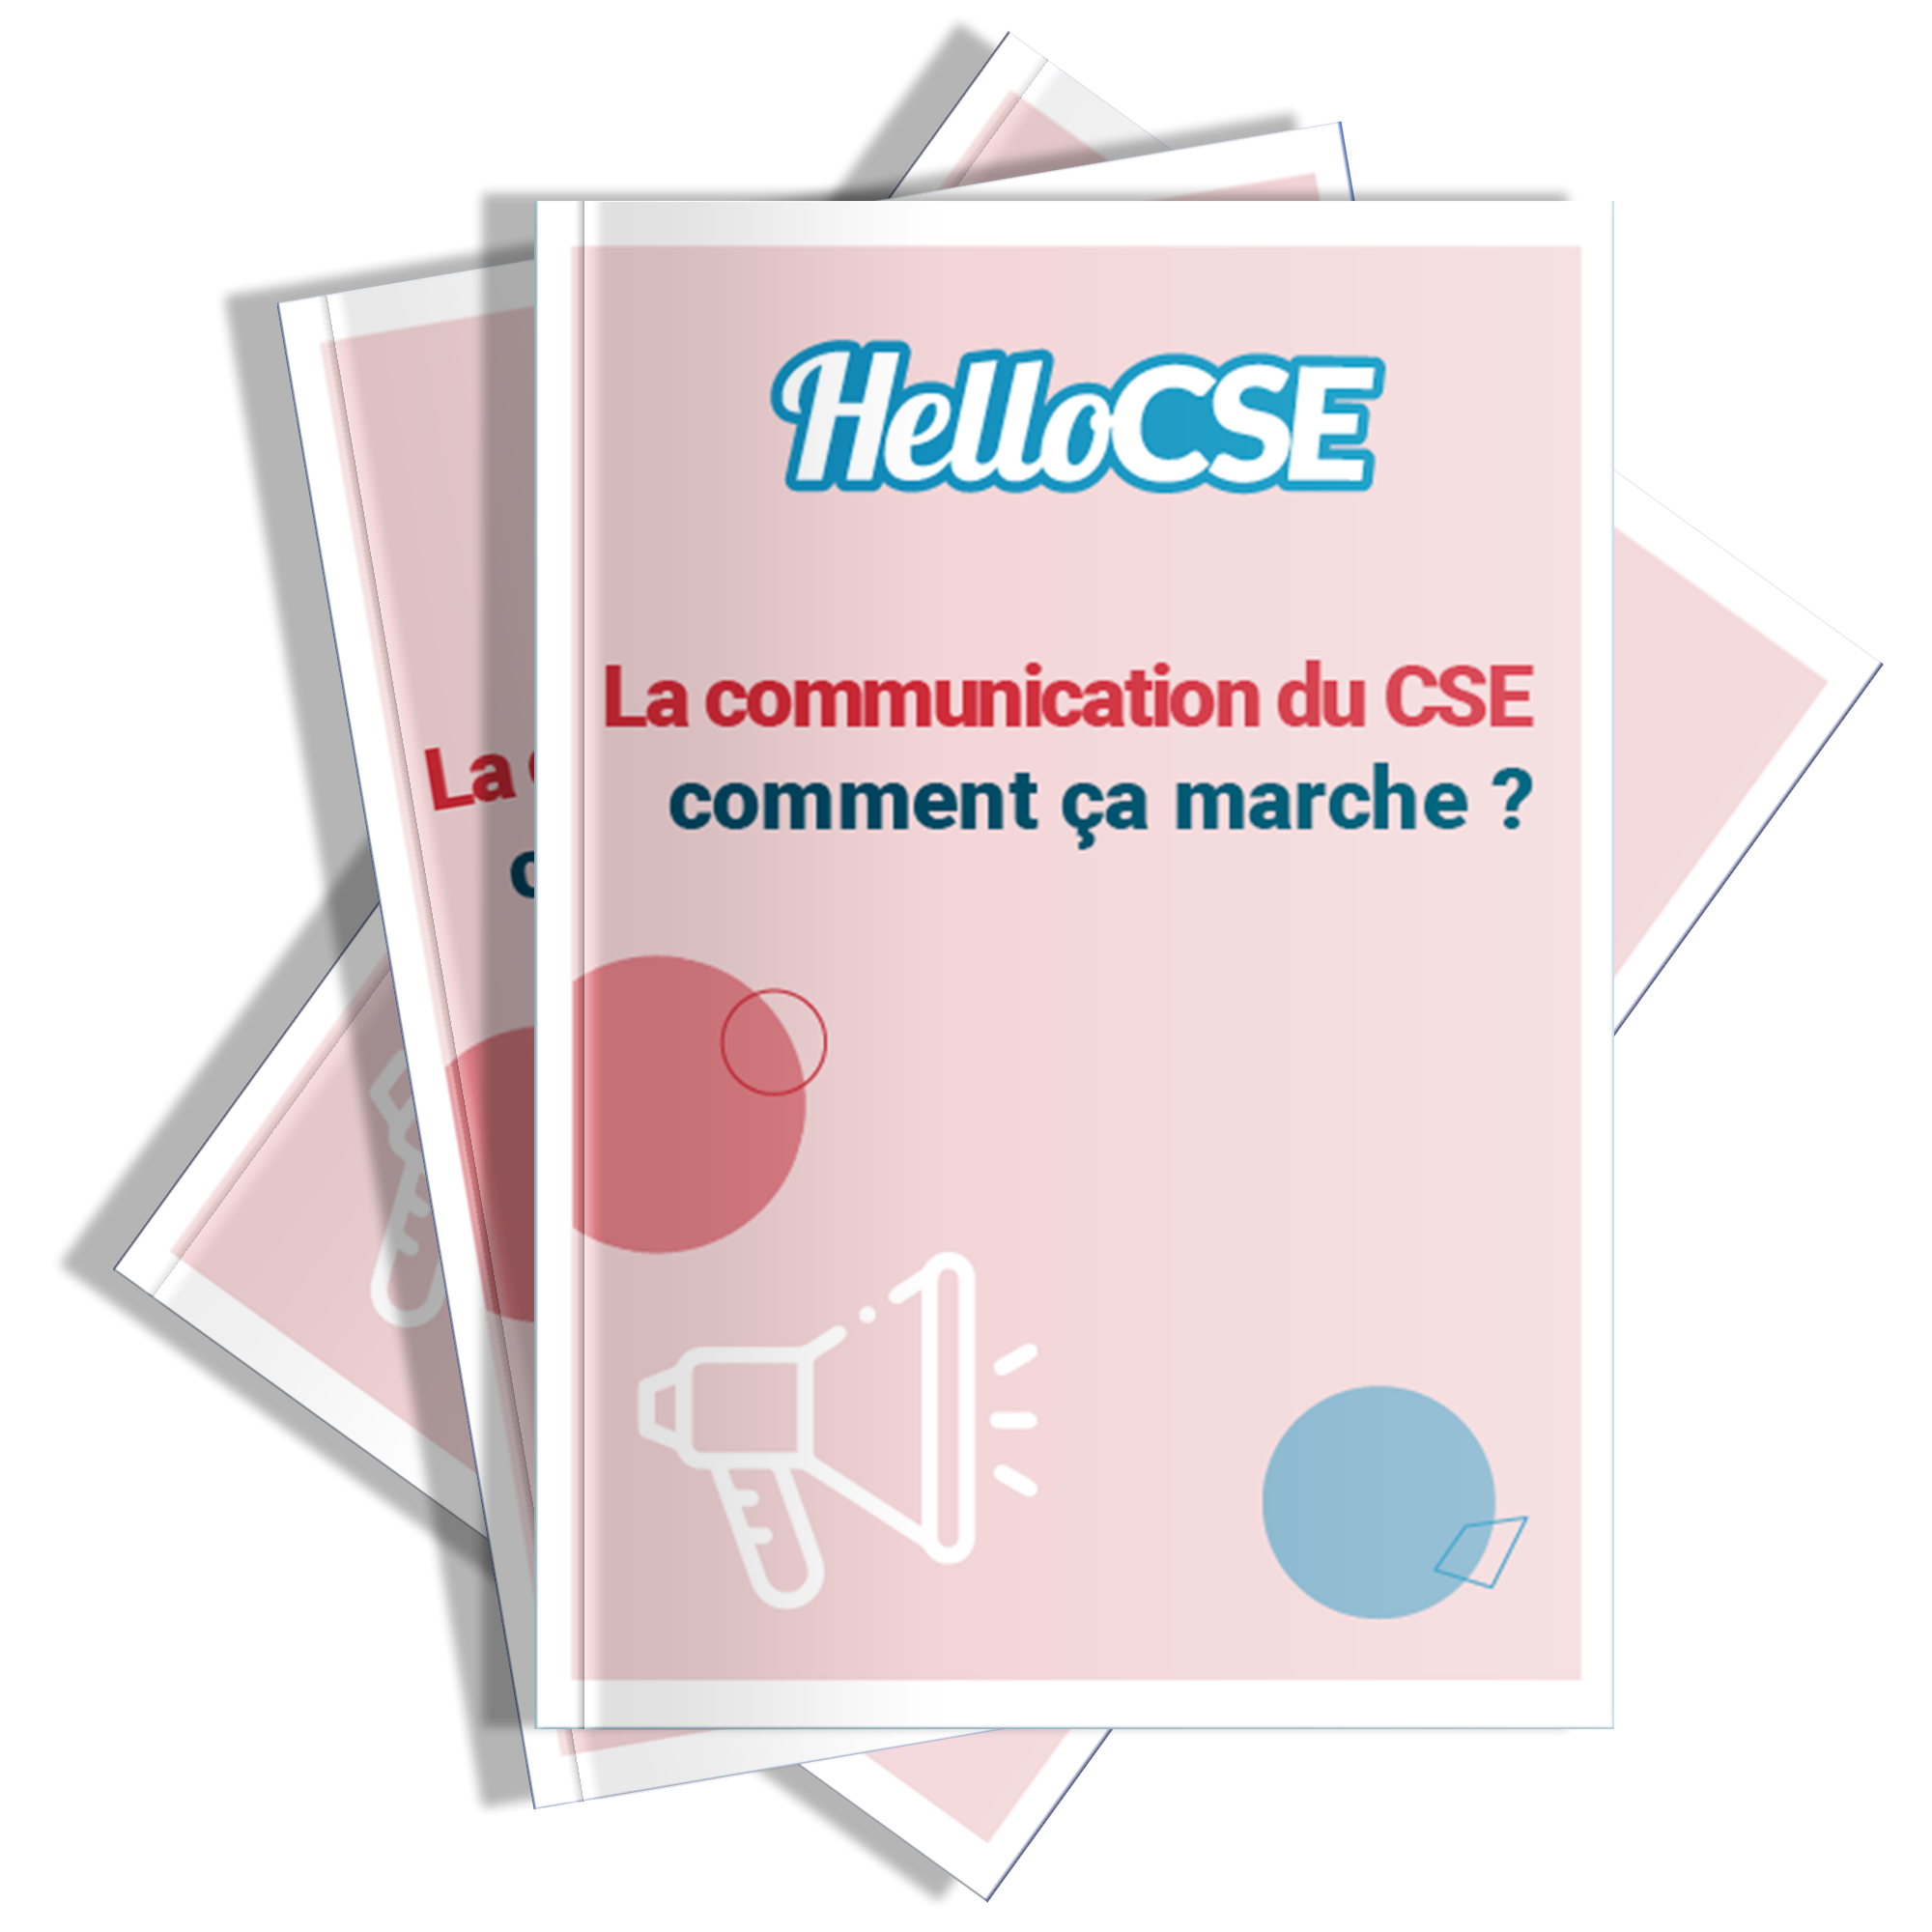 La communication du CSE